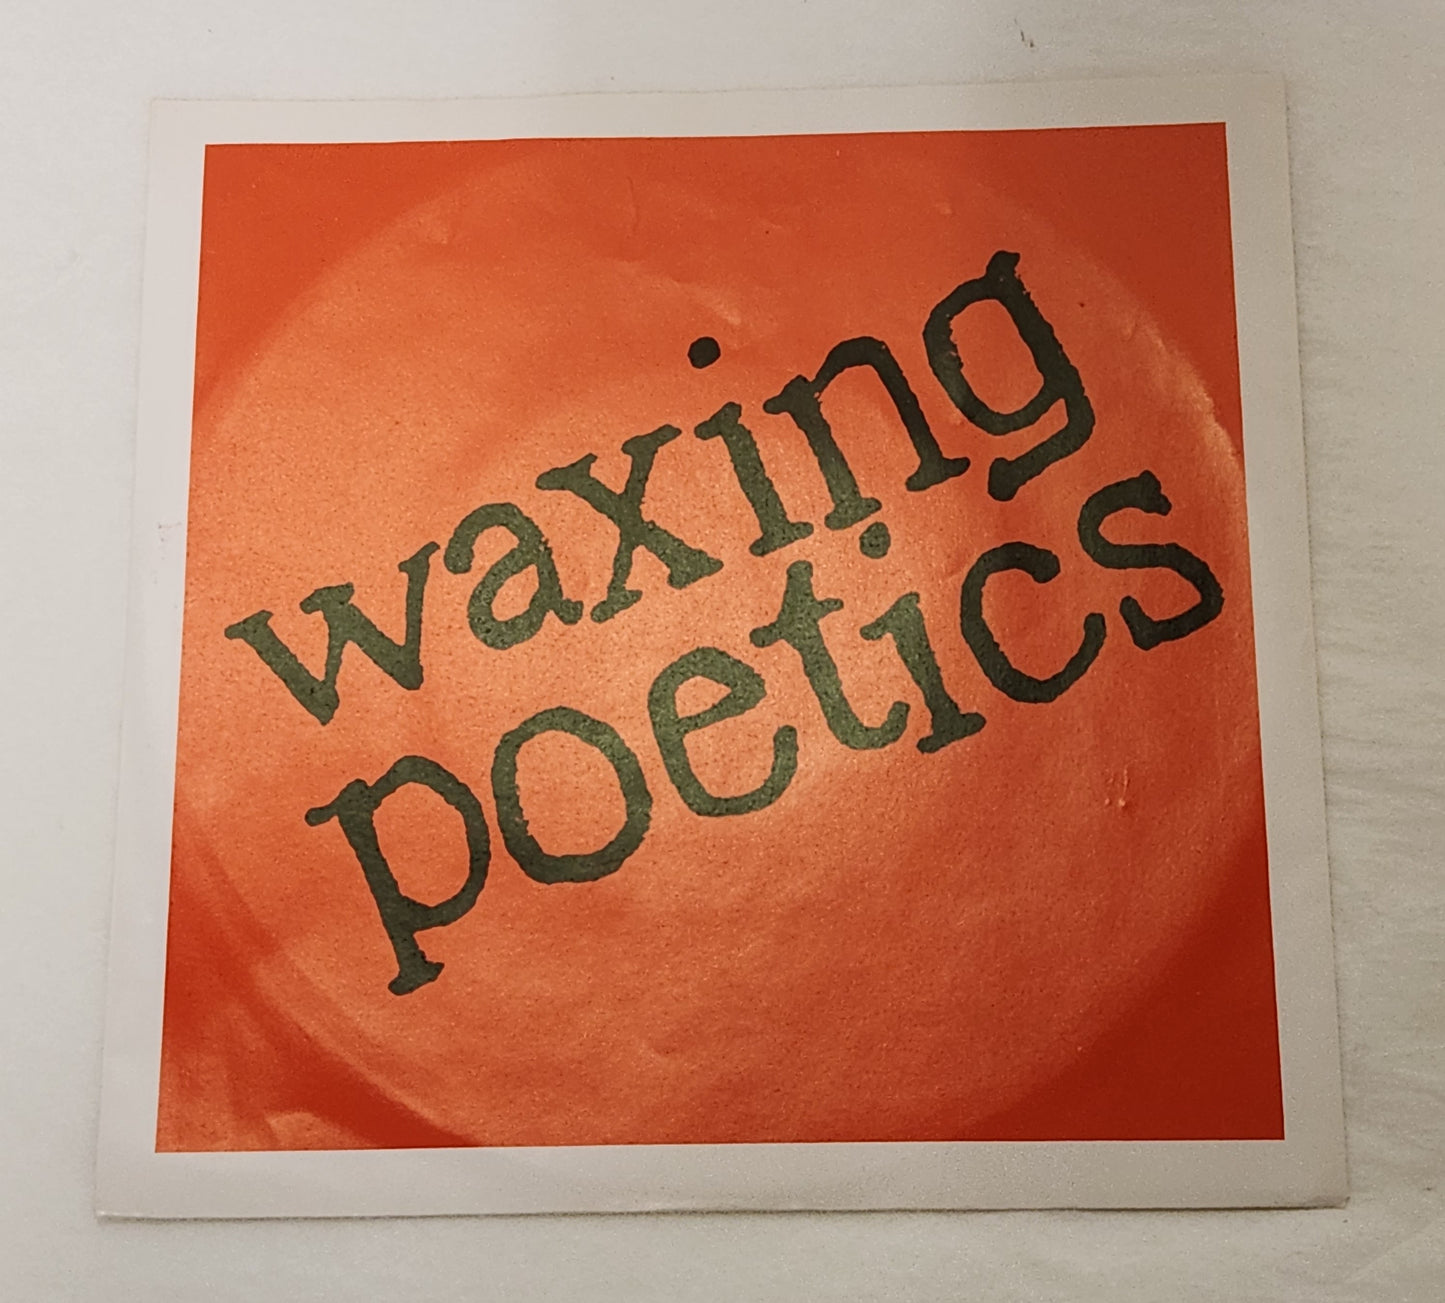 Waxing Poetics "Hermitage" 7" Indie Rock 1984 Vinyl Single Norfolk VA Band